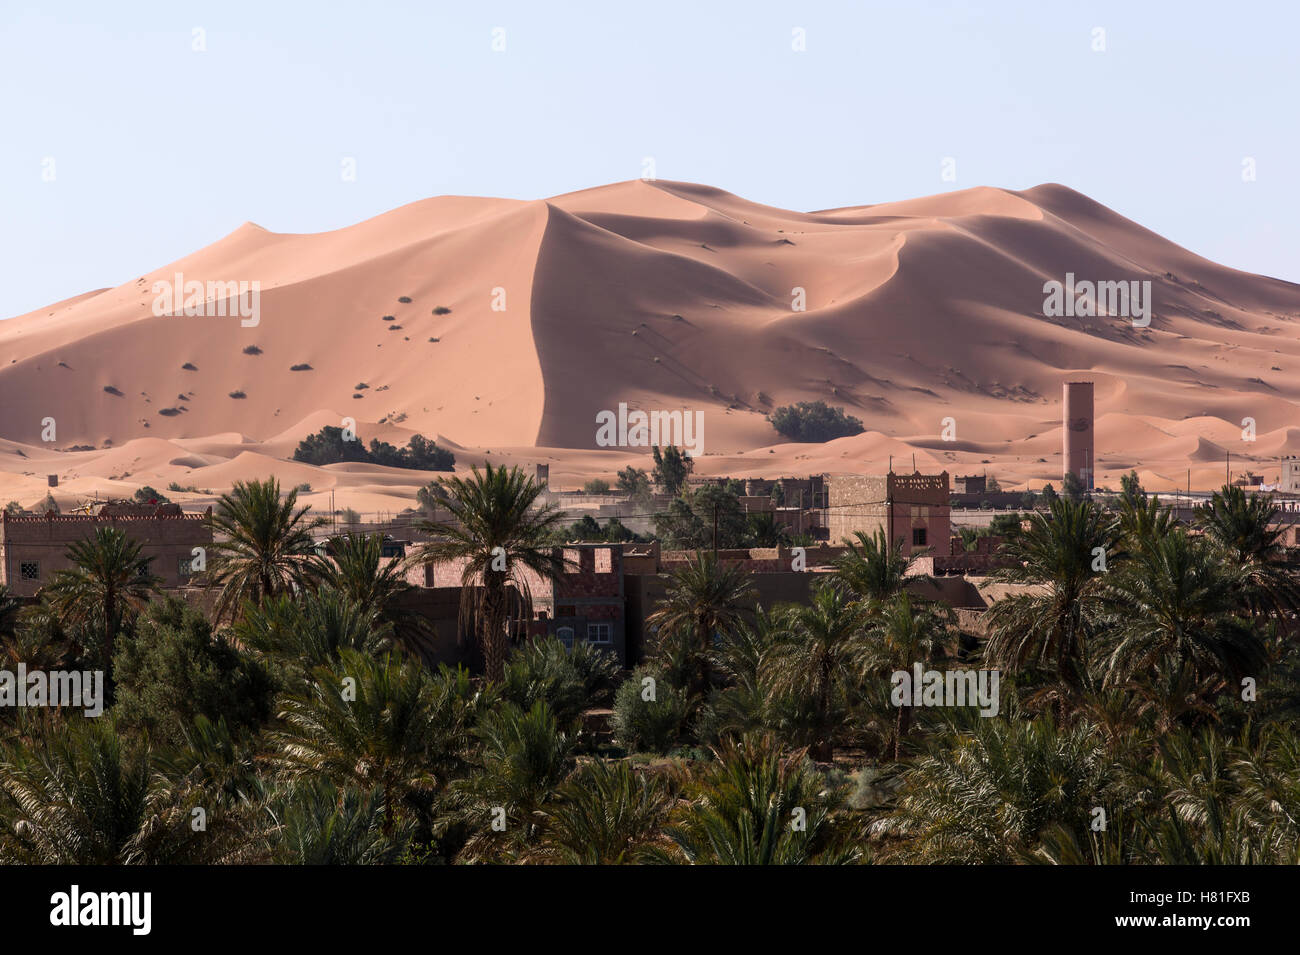 Morocco, Merzouga, the dunes at the edge of the Sahara Desert Stock Photo